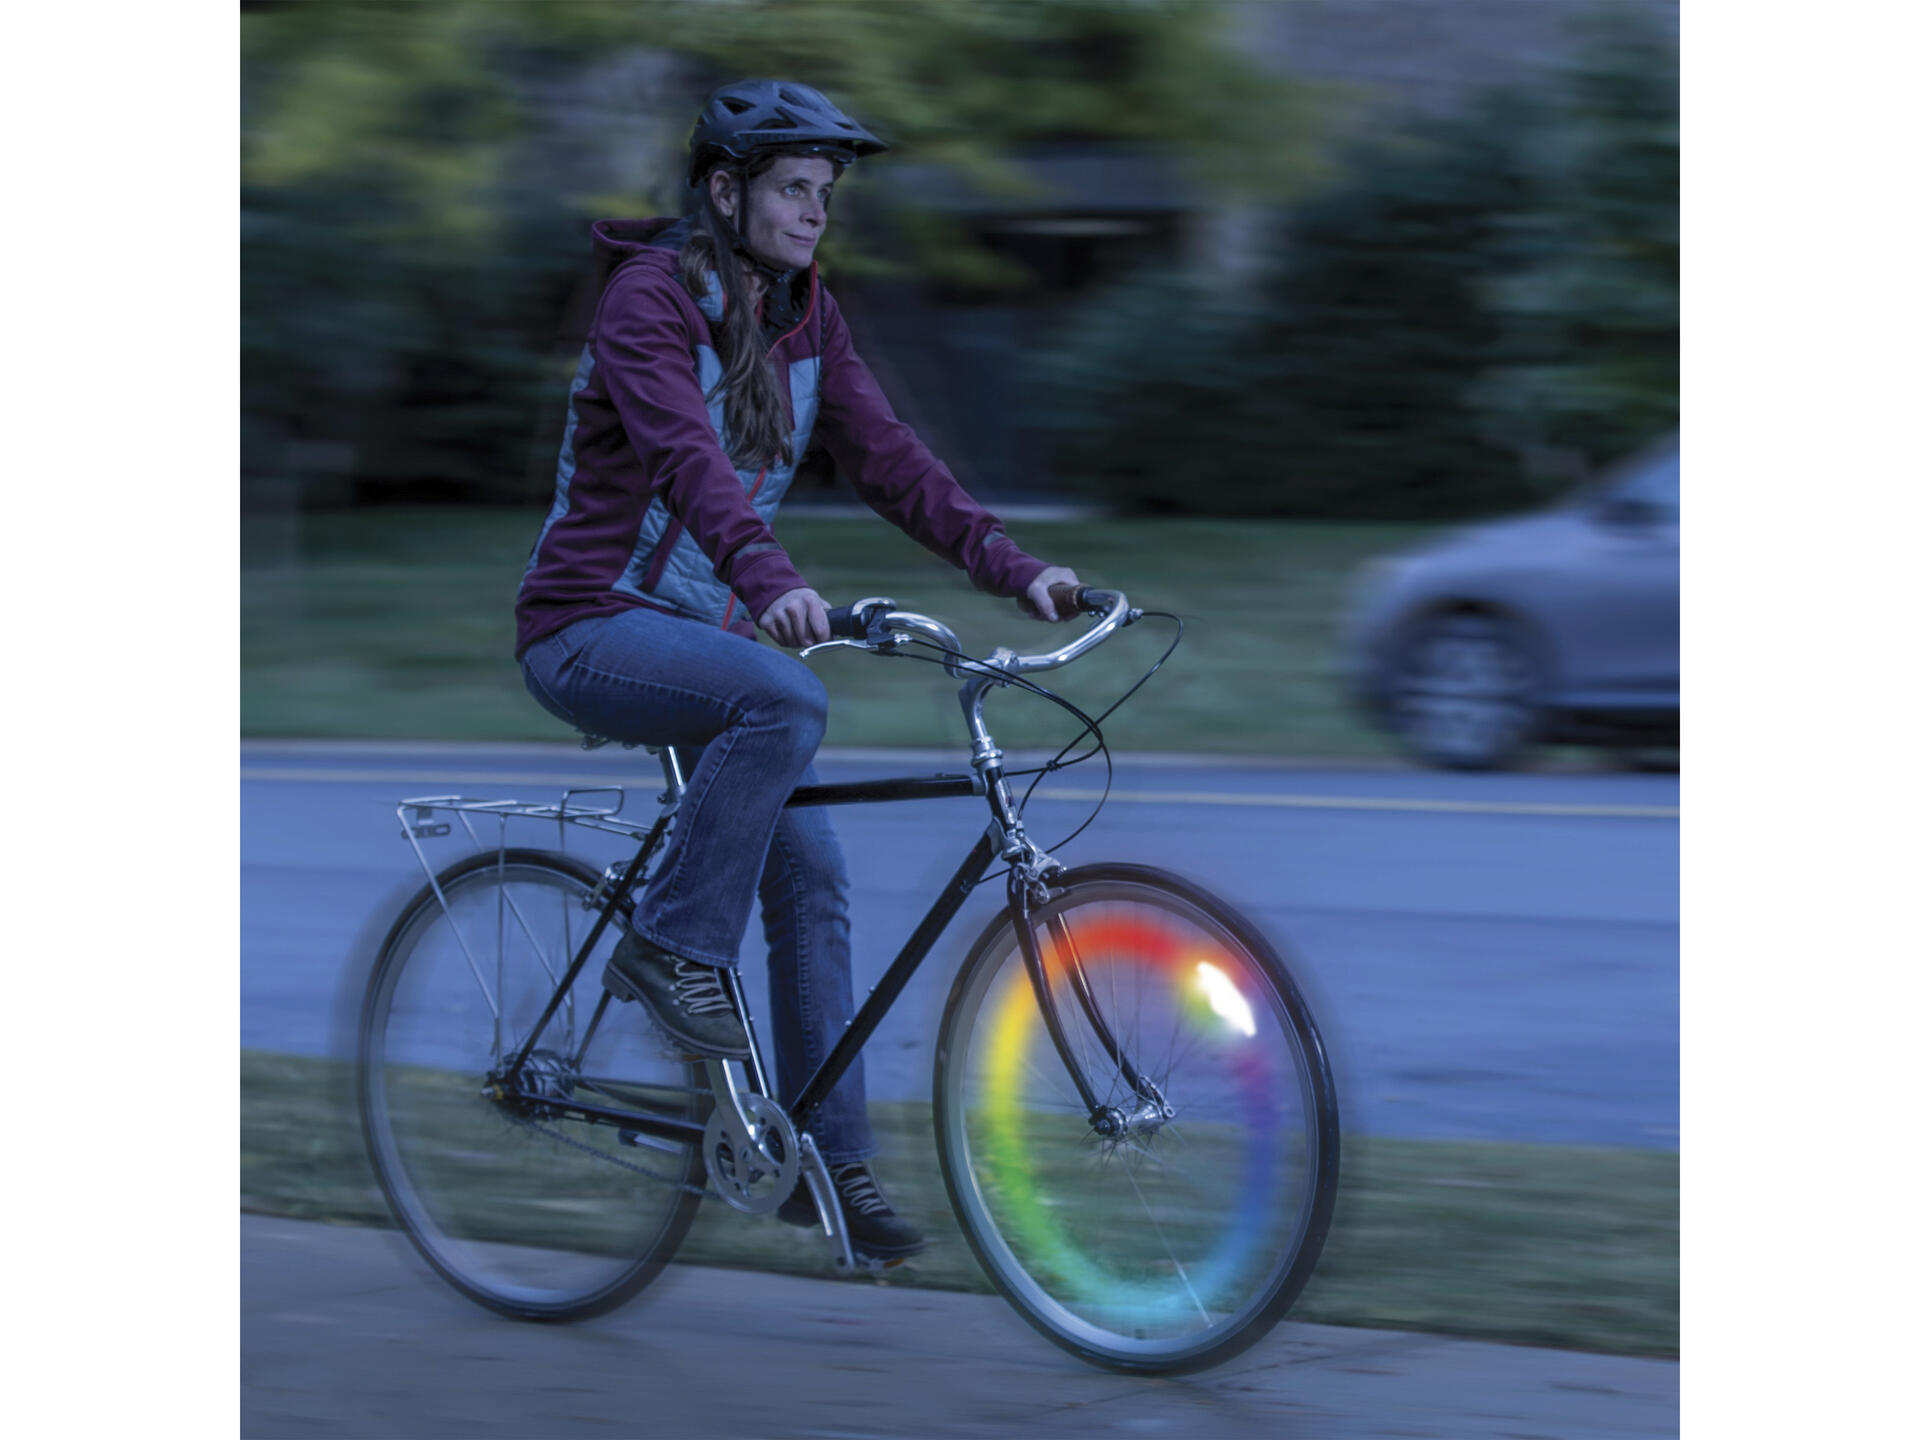 Nite Ize Spokelit Disc-O-Select éclairage roue de vélo LED rechargeable  multicolore